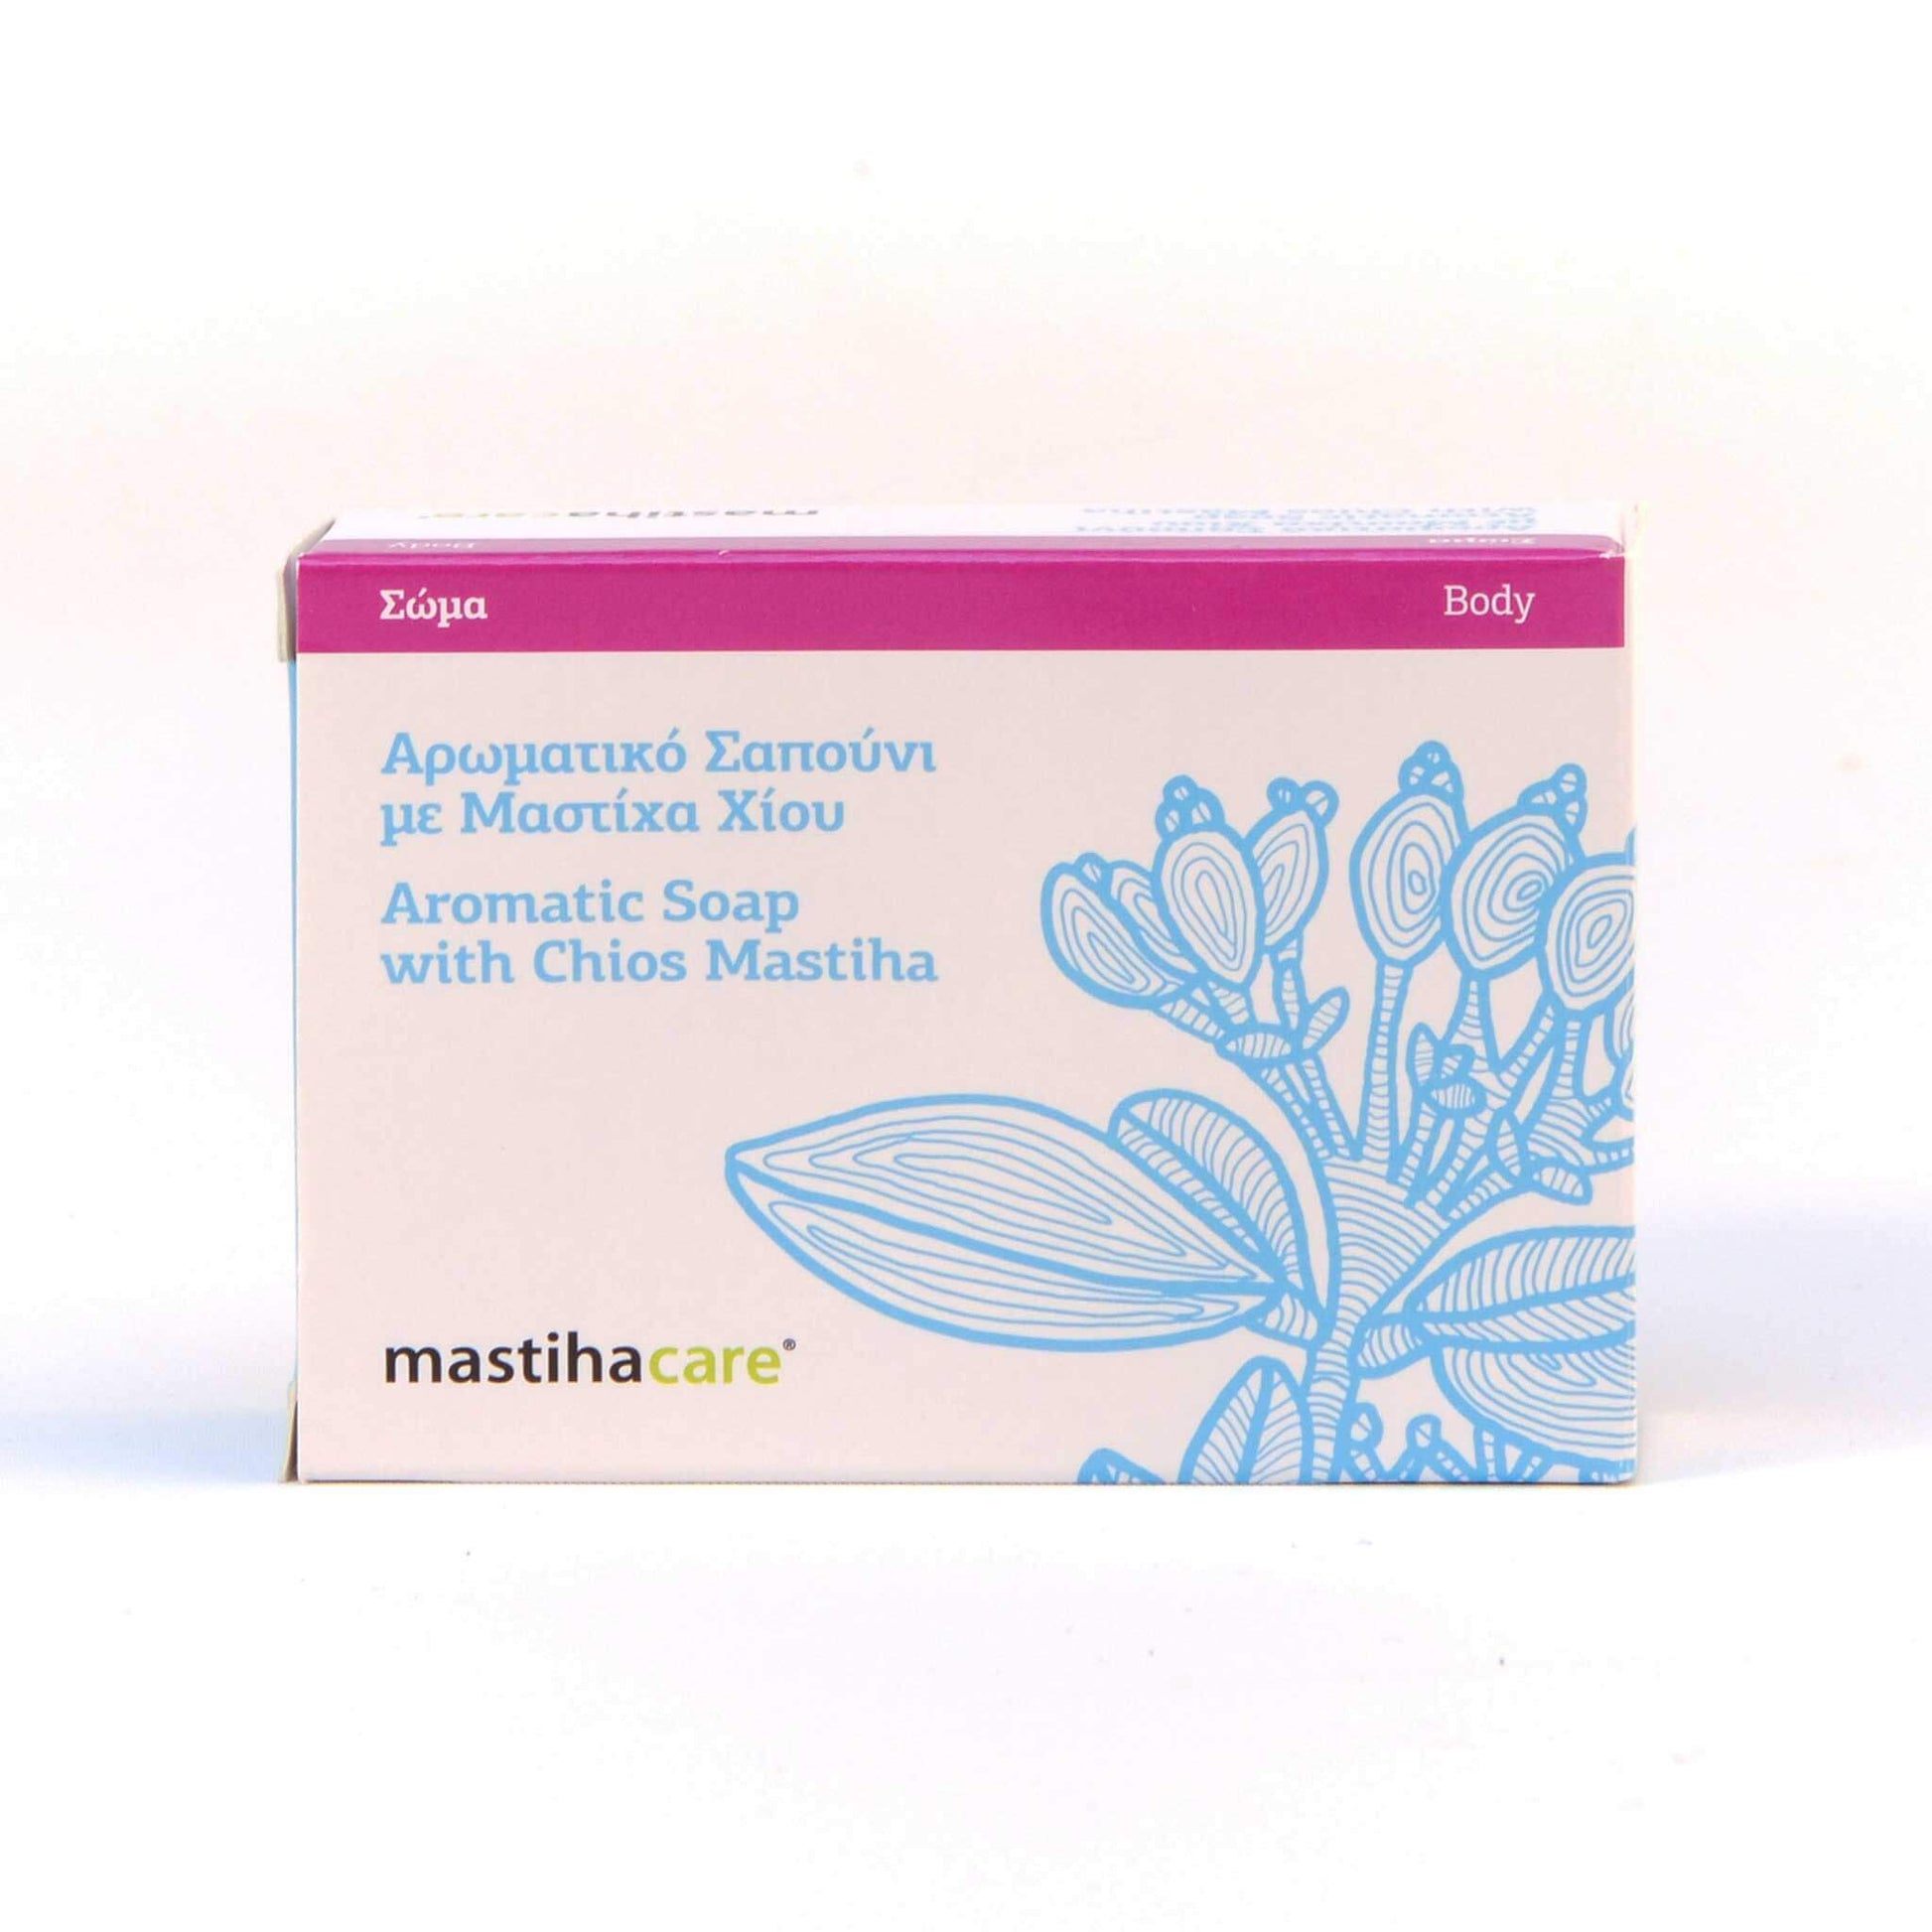 Aromatische Seife mit Mastix